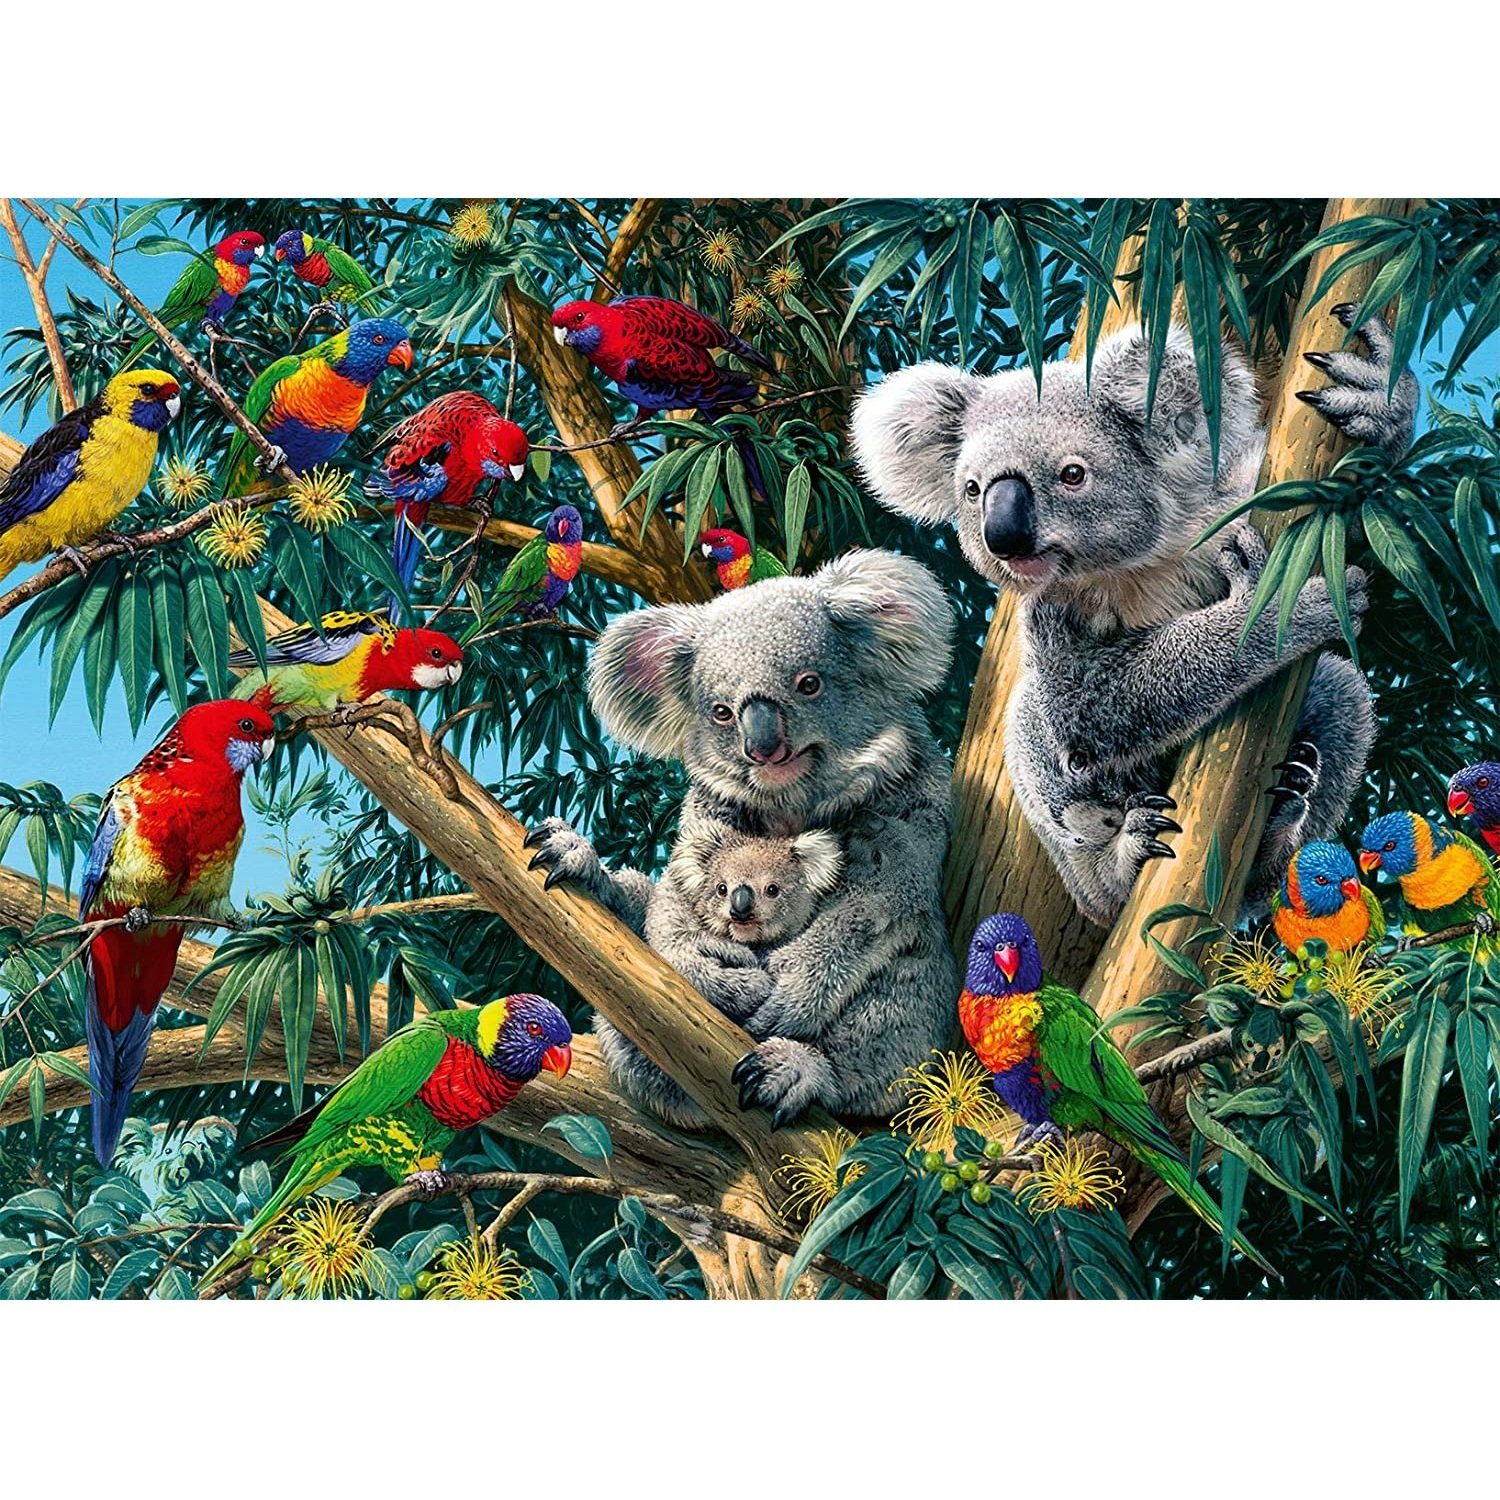 500 Puzzleteile - Koalas Baum, Teile Ravensburger Puzzle Ravensburger im Puzzle, 500